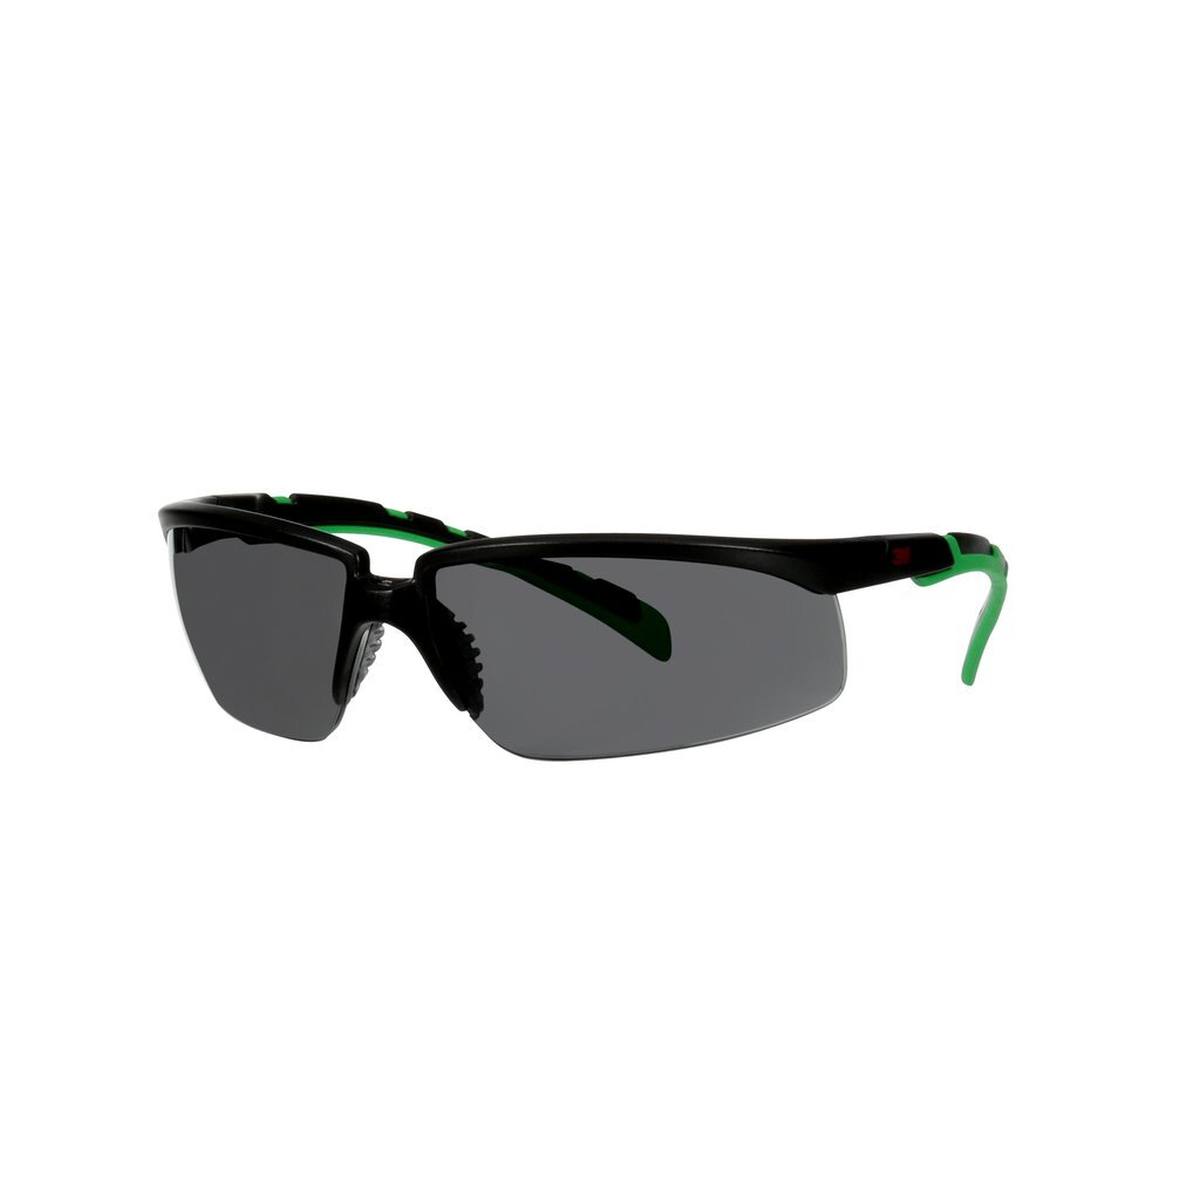 3M Solus 2000 lunettes de protection, monture noire/verte, traitement anti-rayures + (K), écran gris IR 3,0, S2030ASP-BLK